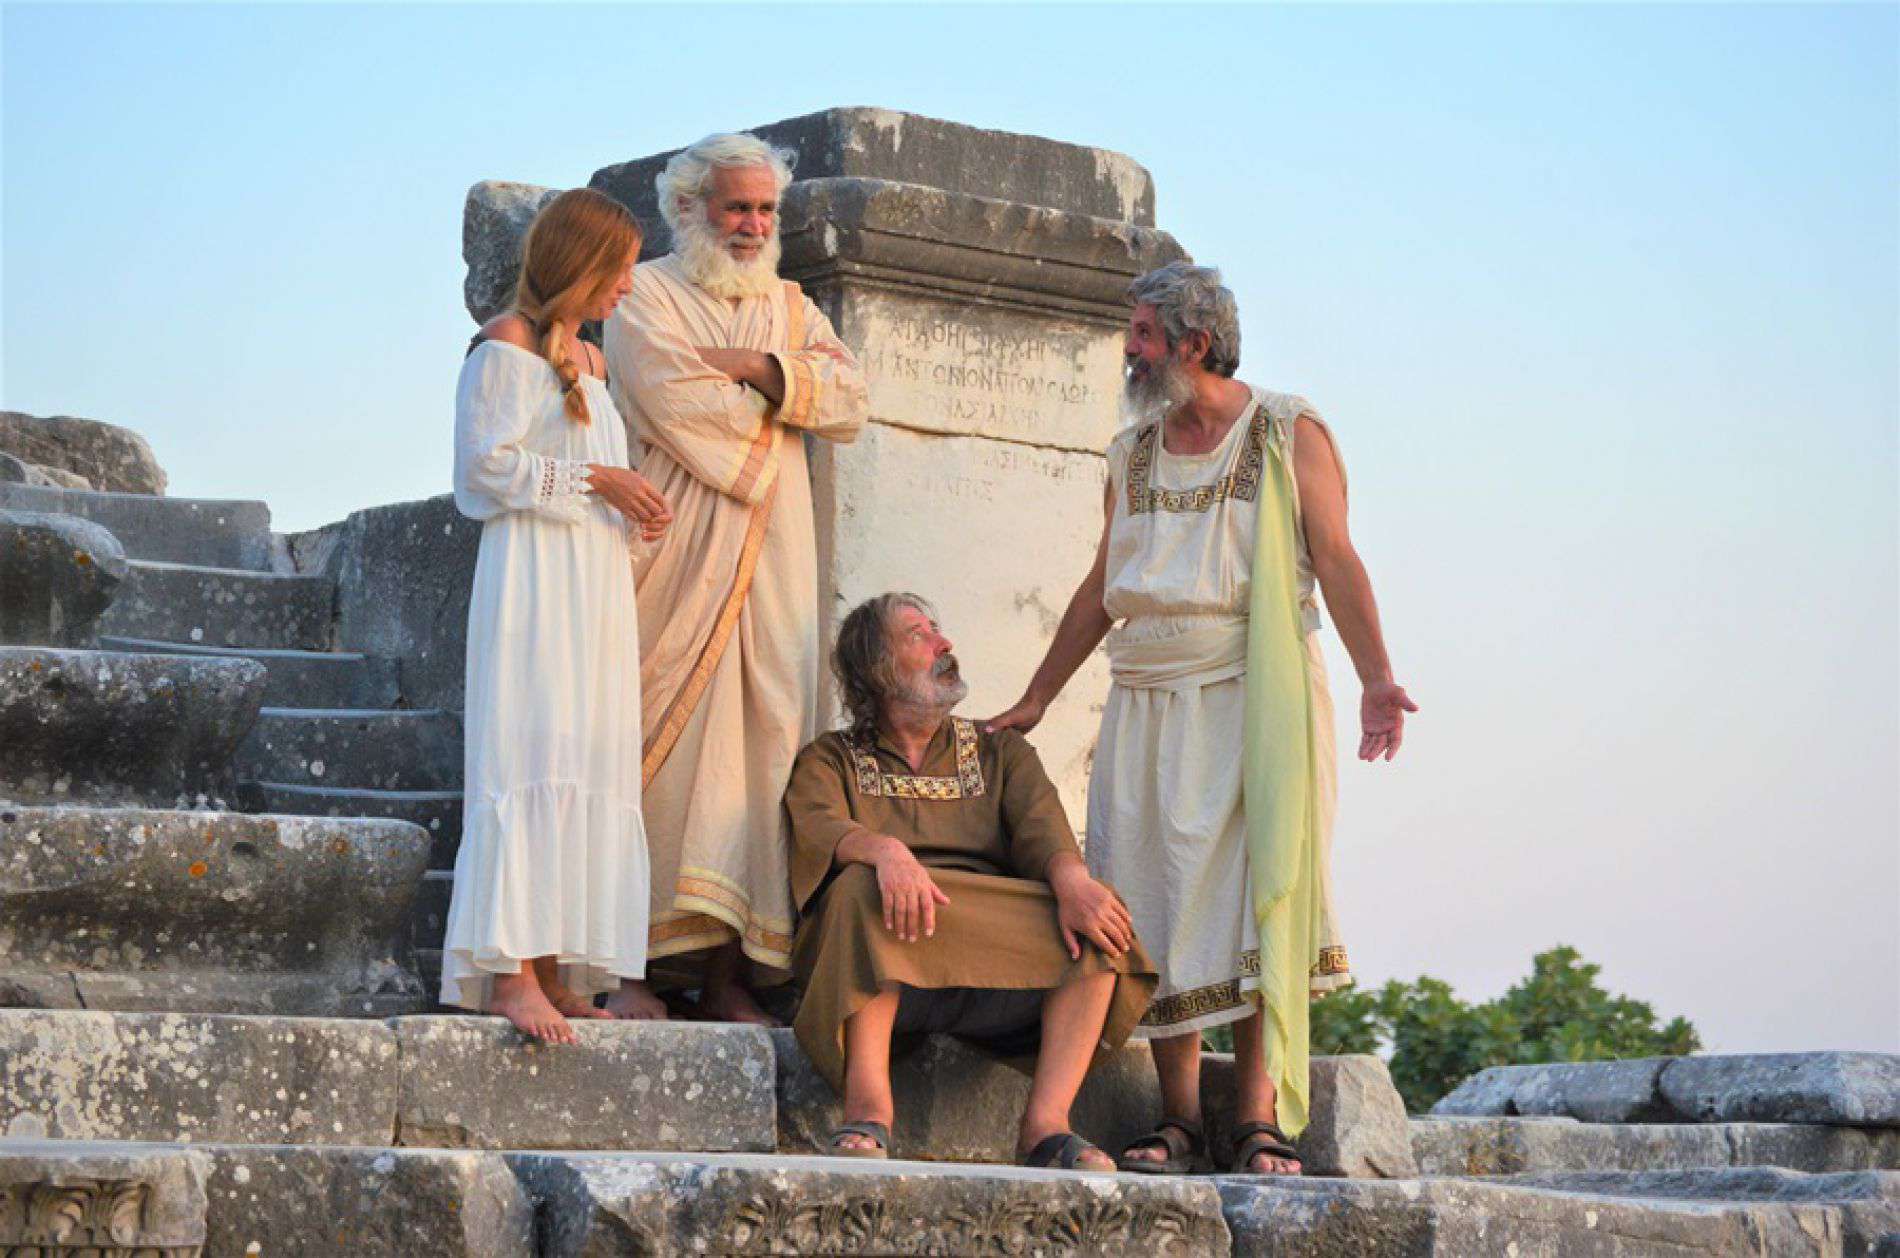 Philosophers Stone Tour from izmir